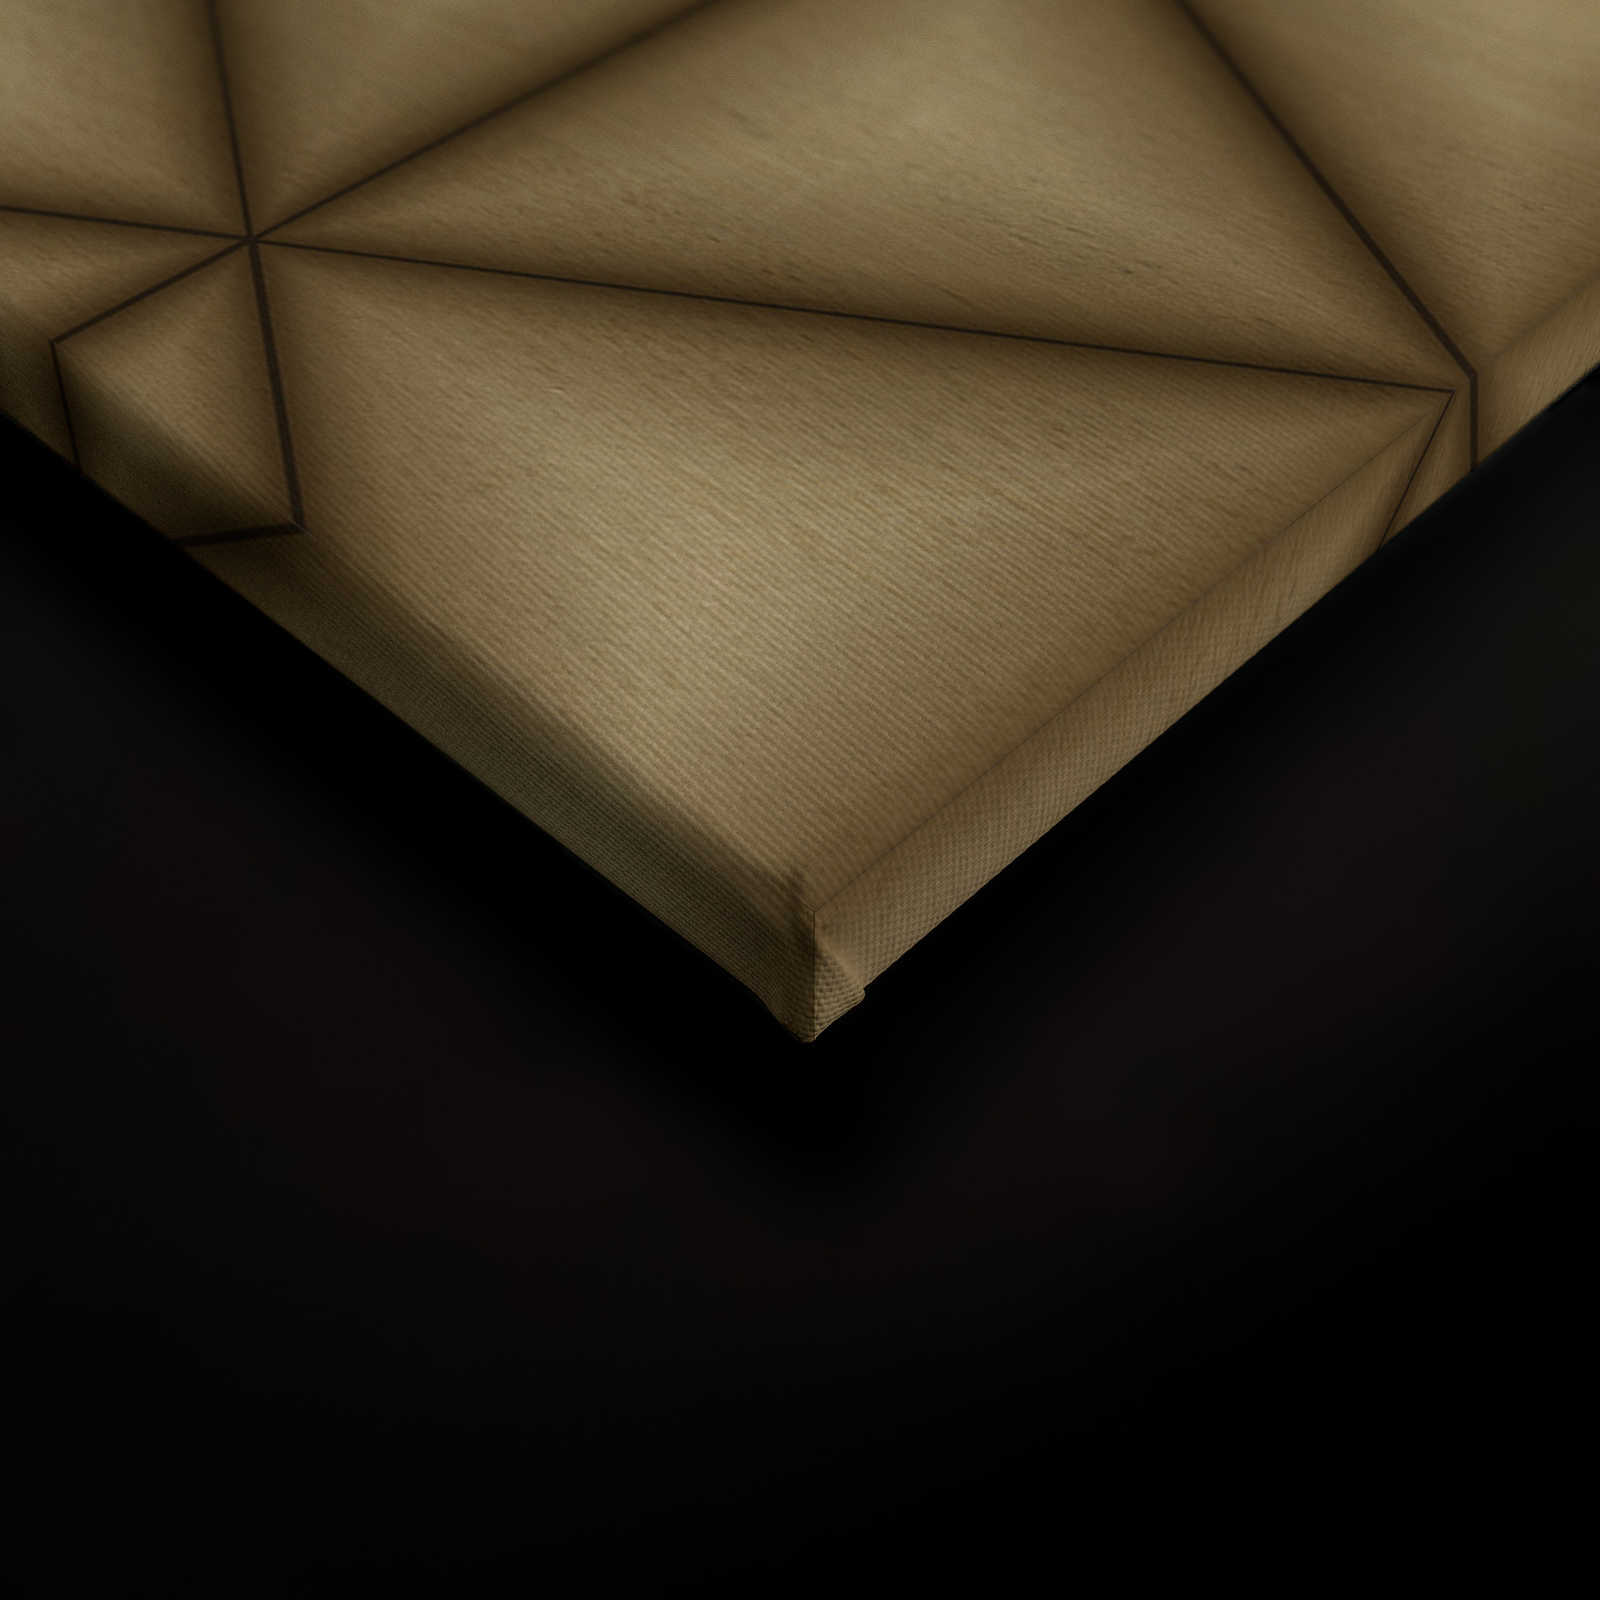             Leinwandbild geometrisches Dreiecks Muster in Holzoptik | braun, beige – 0,90 m x 0,60 m
        